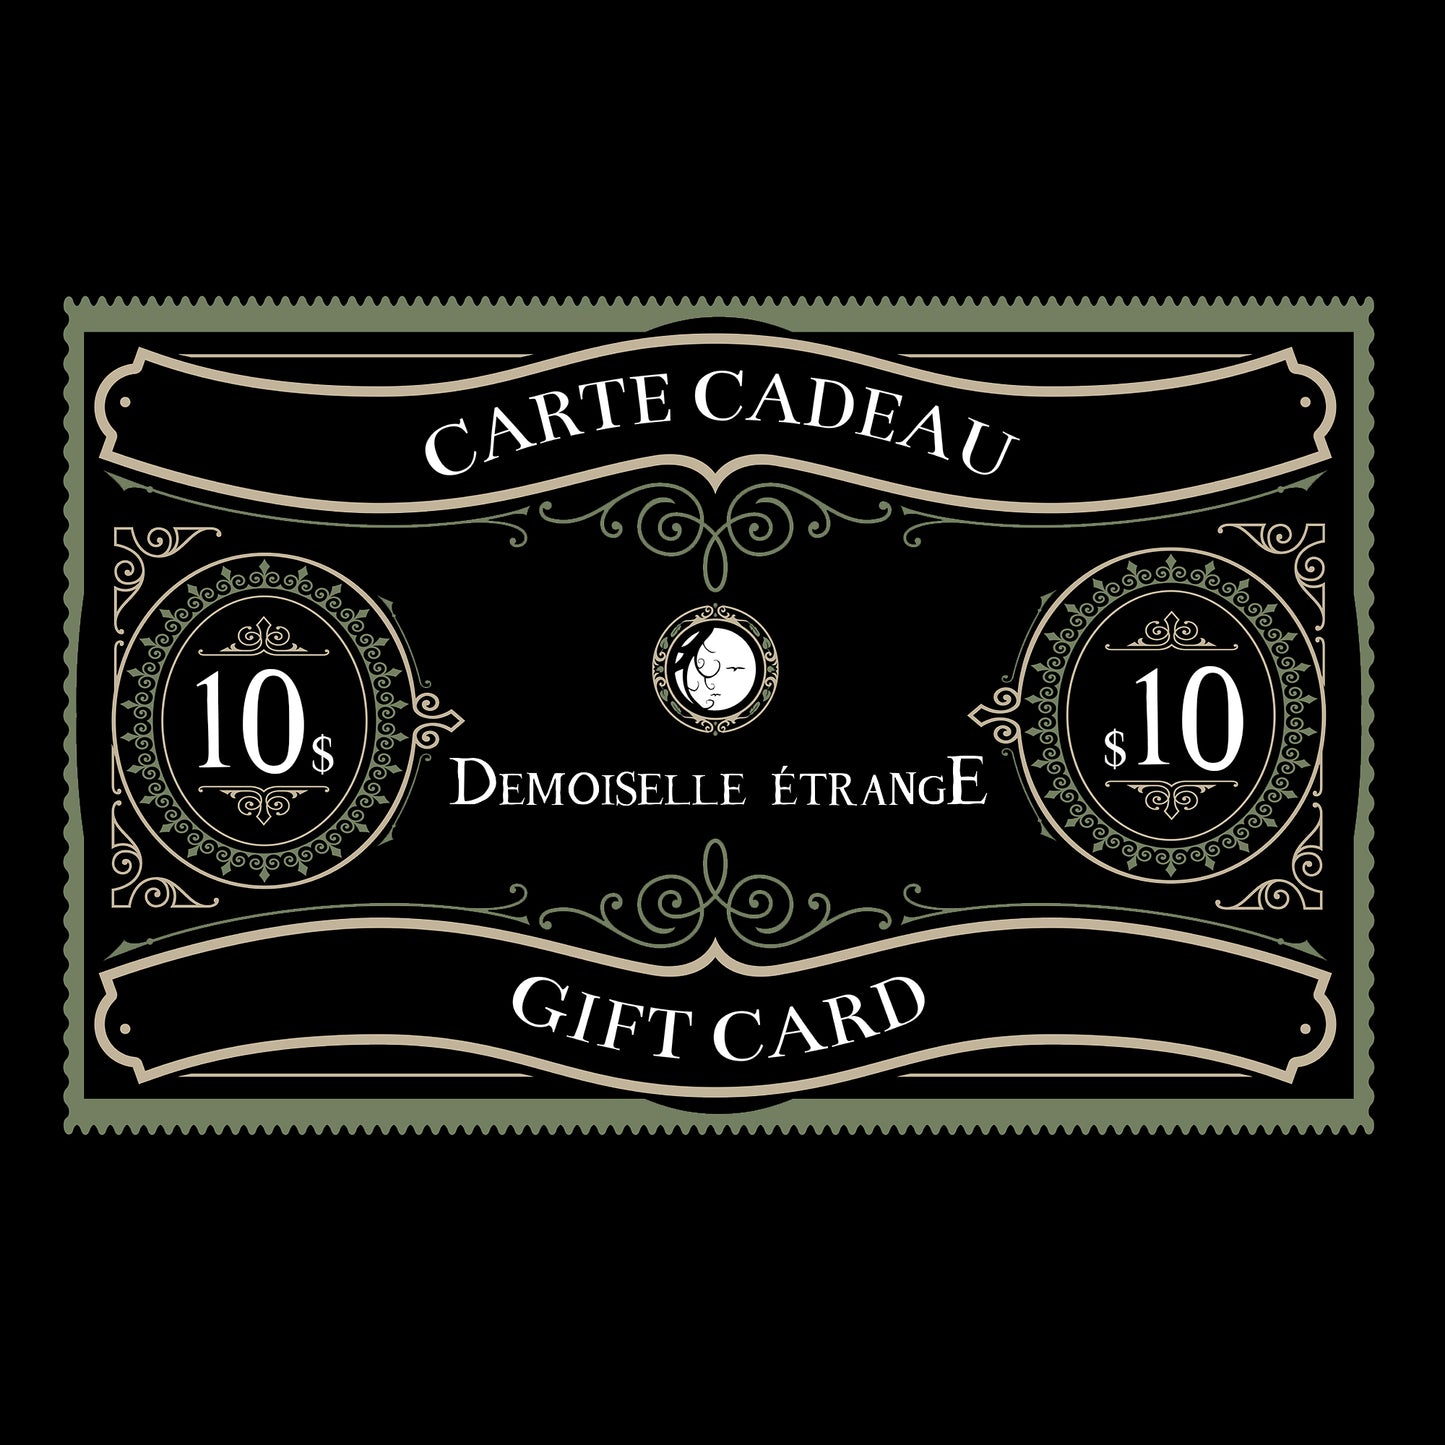 DEMOISELLE ETRANGE $10 Gift card